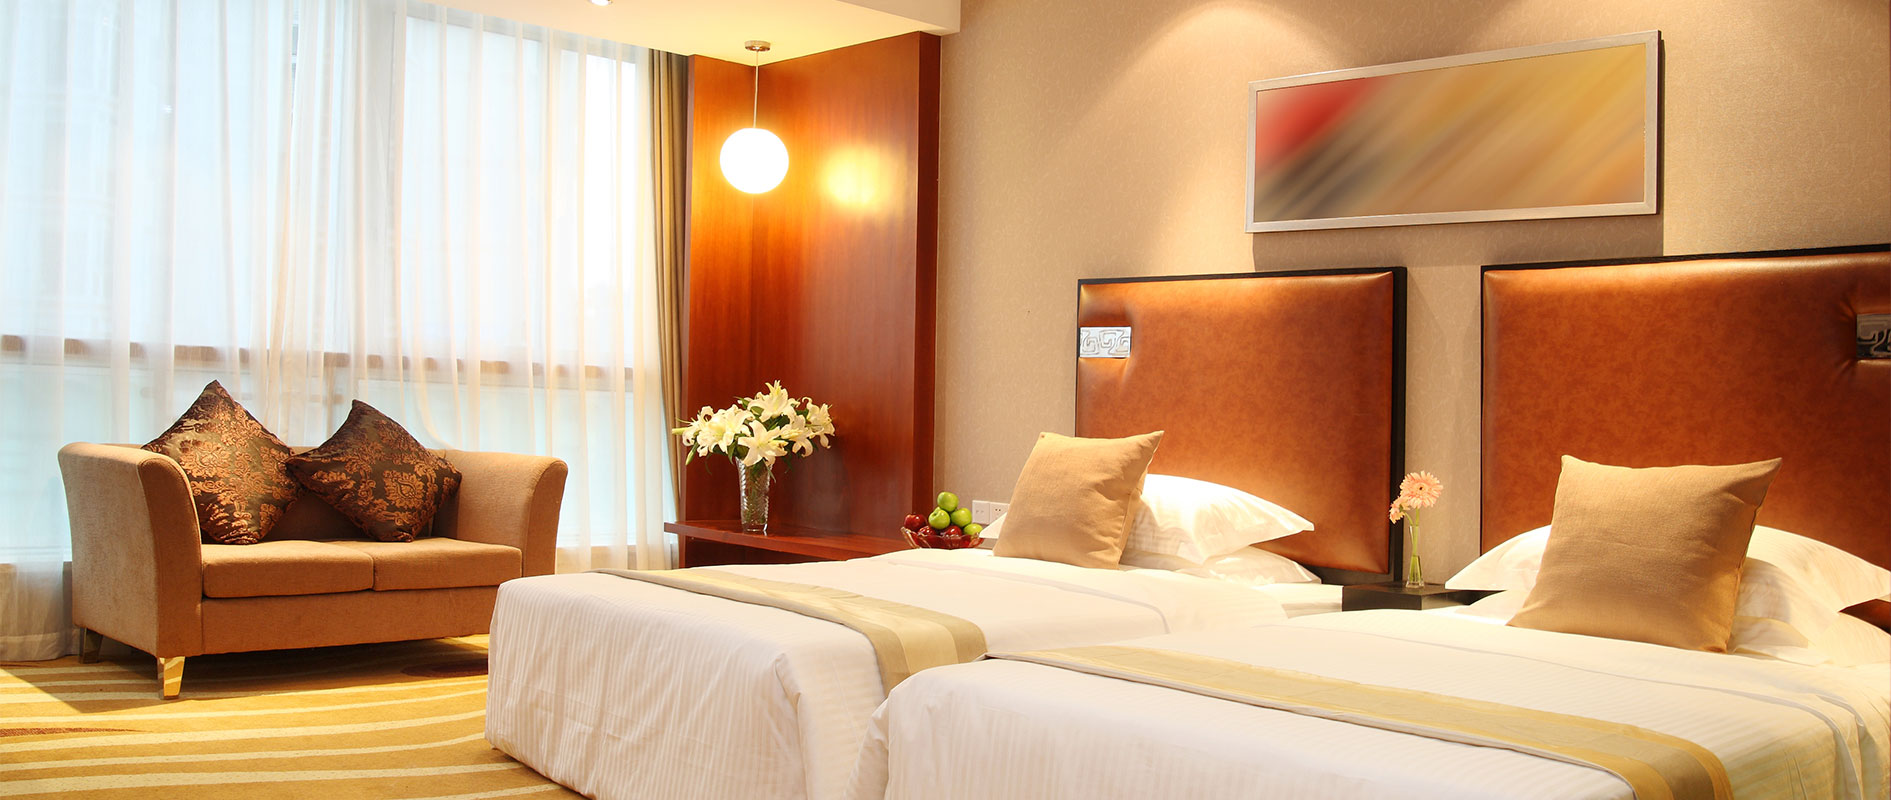 Luxury Hotel Rooms